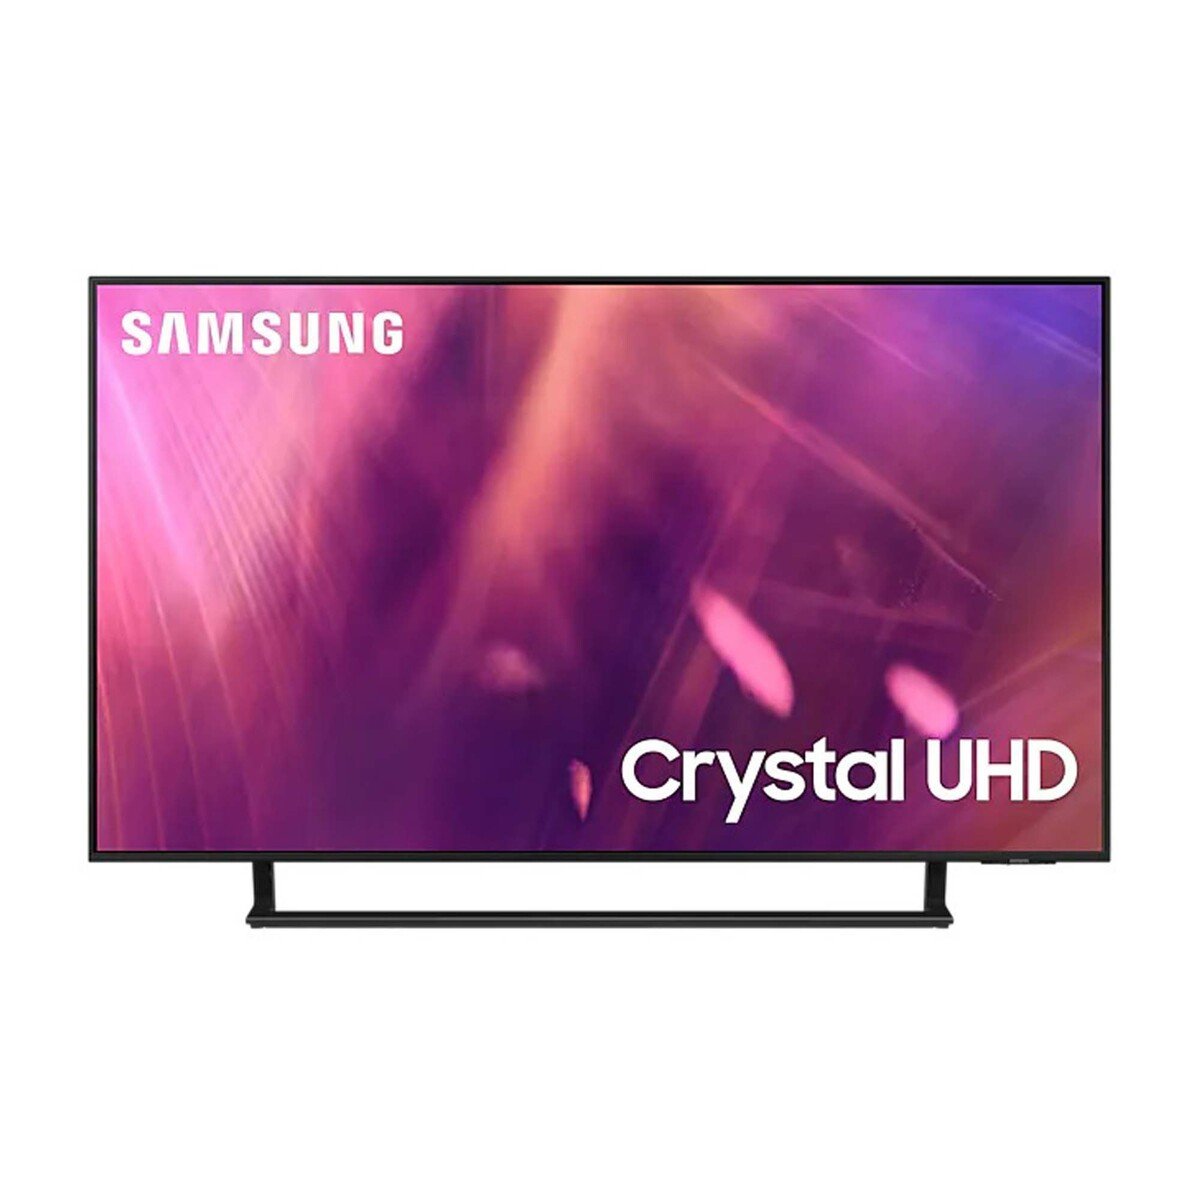 Samsung UHD TV UA65AU9000UXZN 65inch